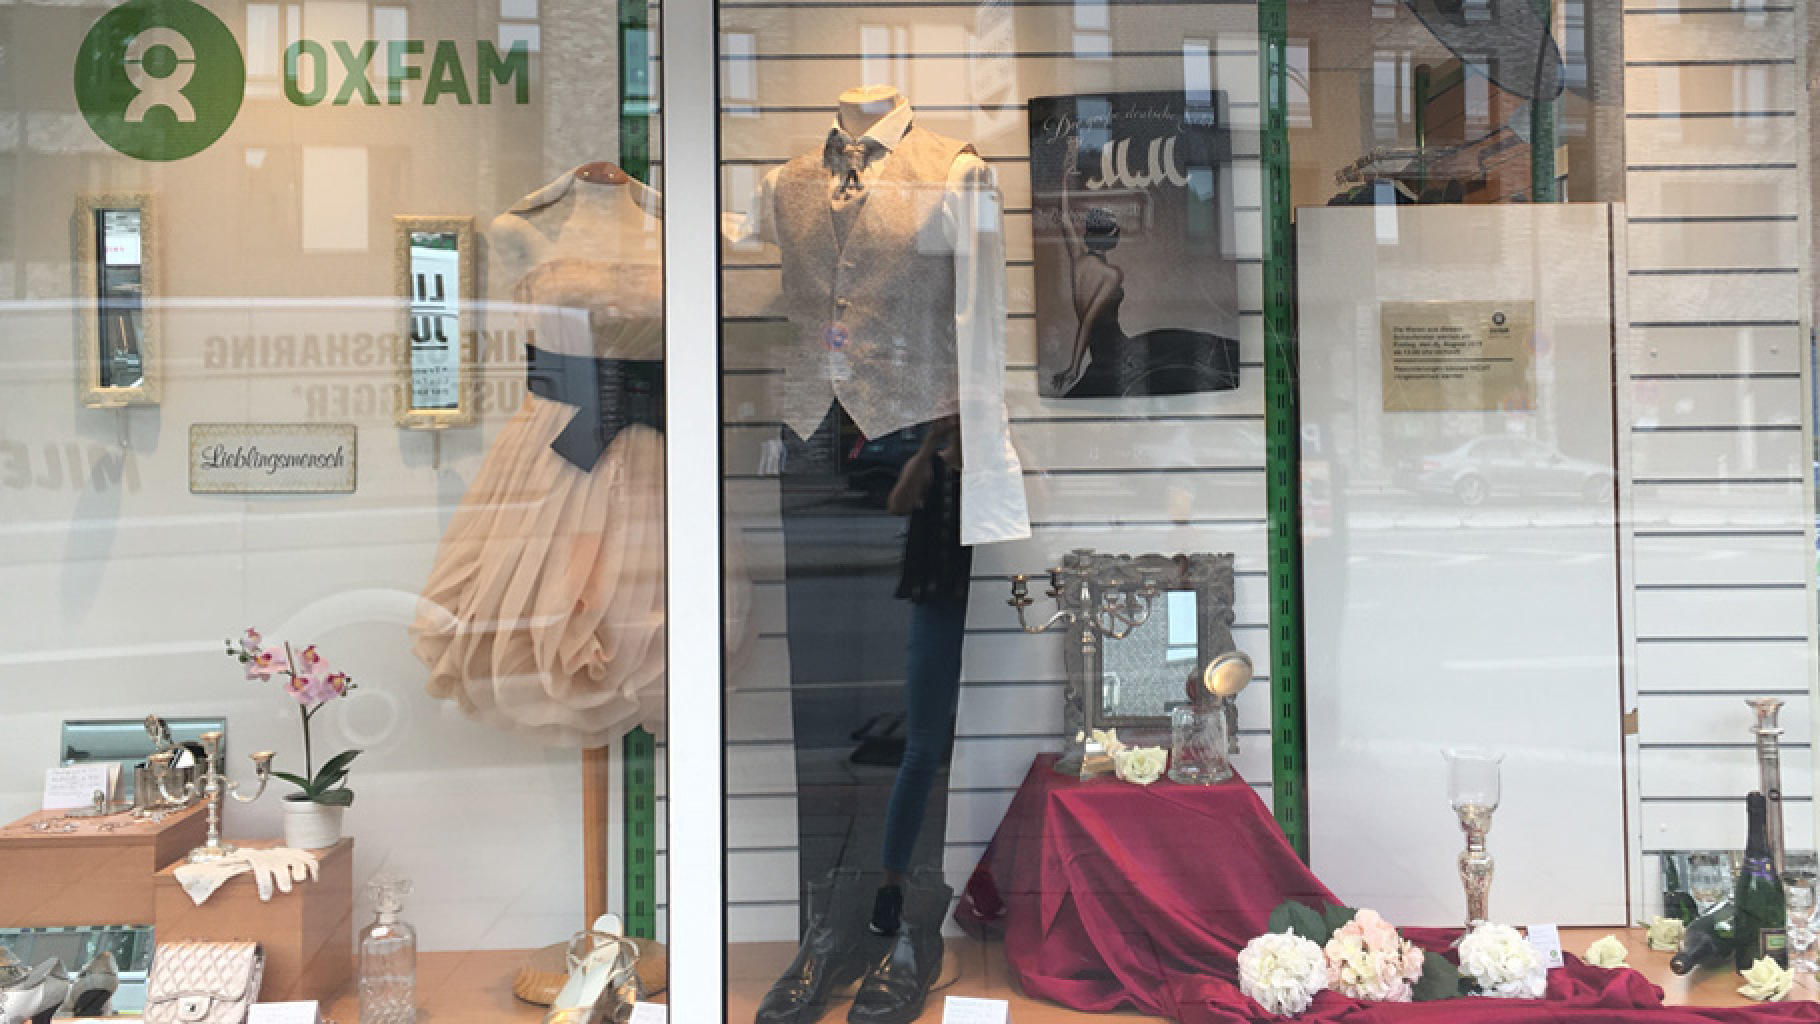 Festliche Kleidung im Schaufenster eines Oxfam Shops